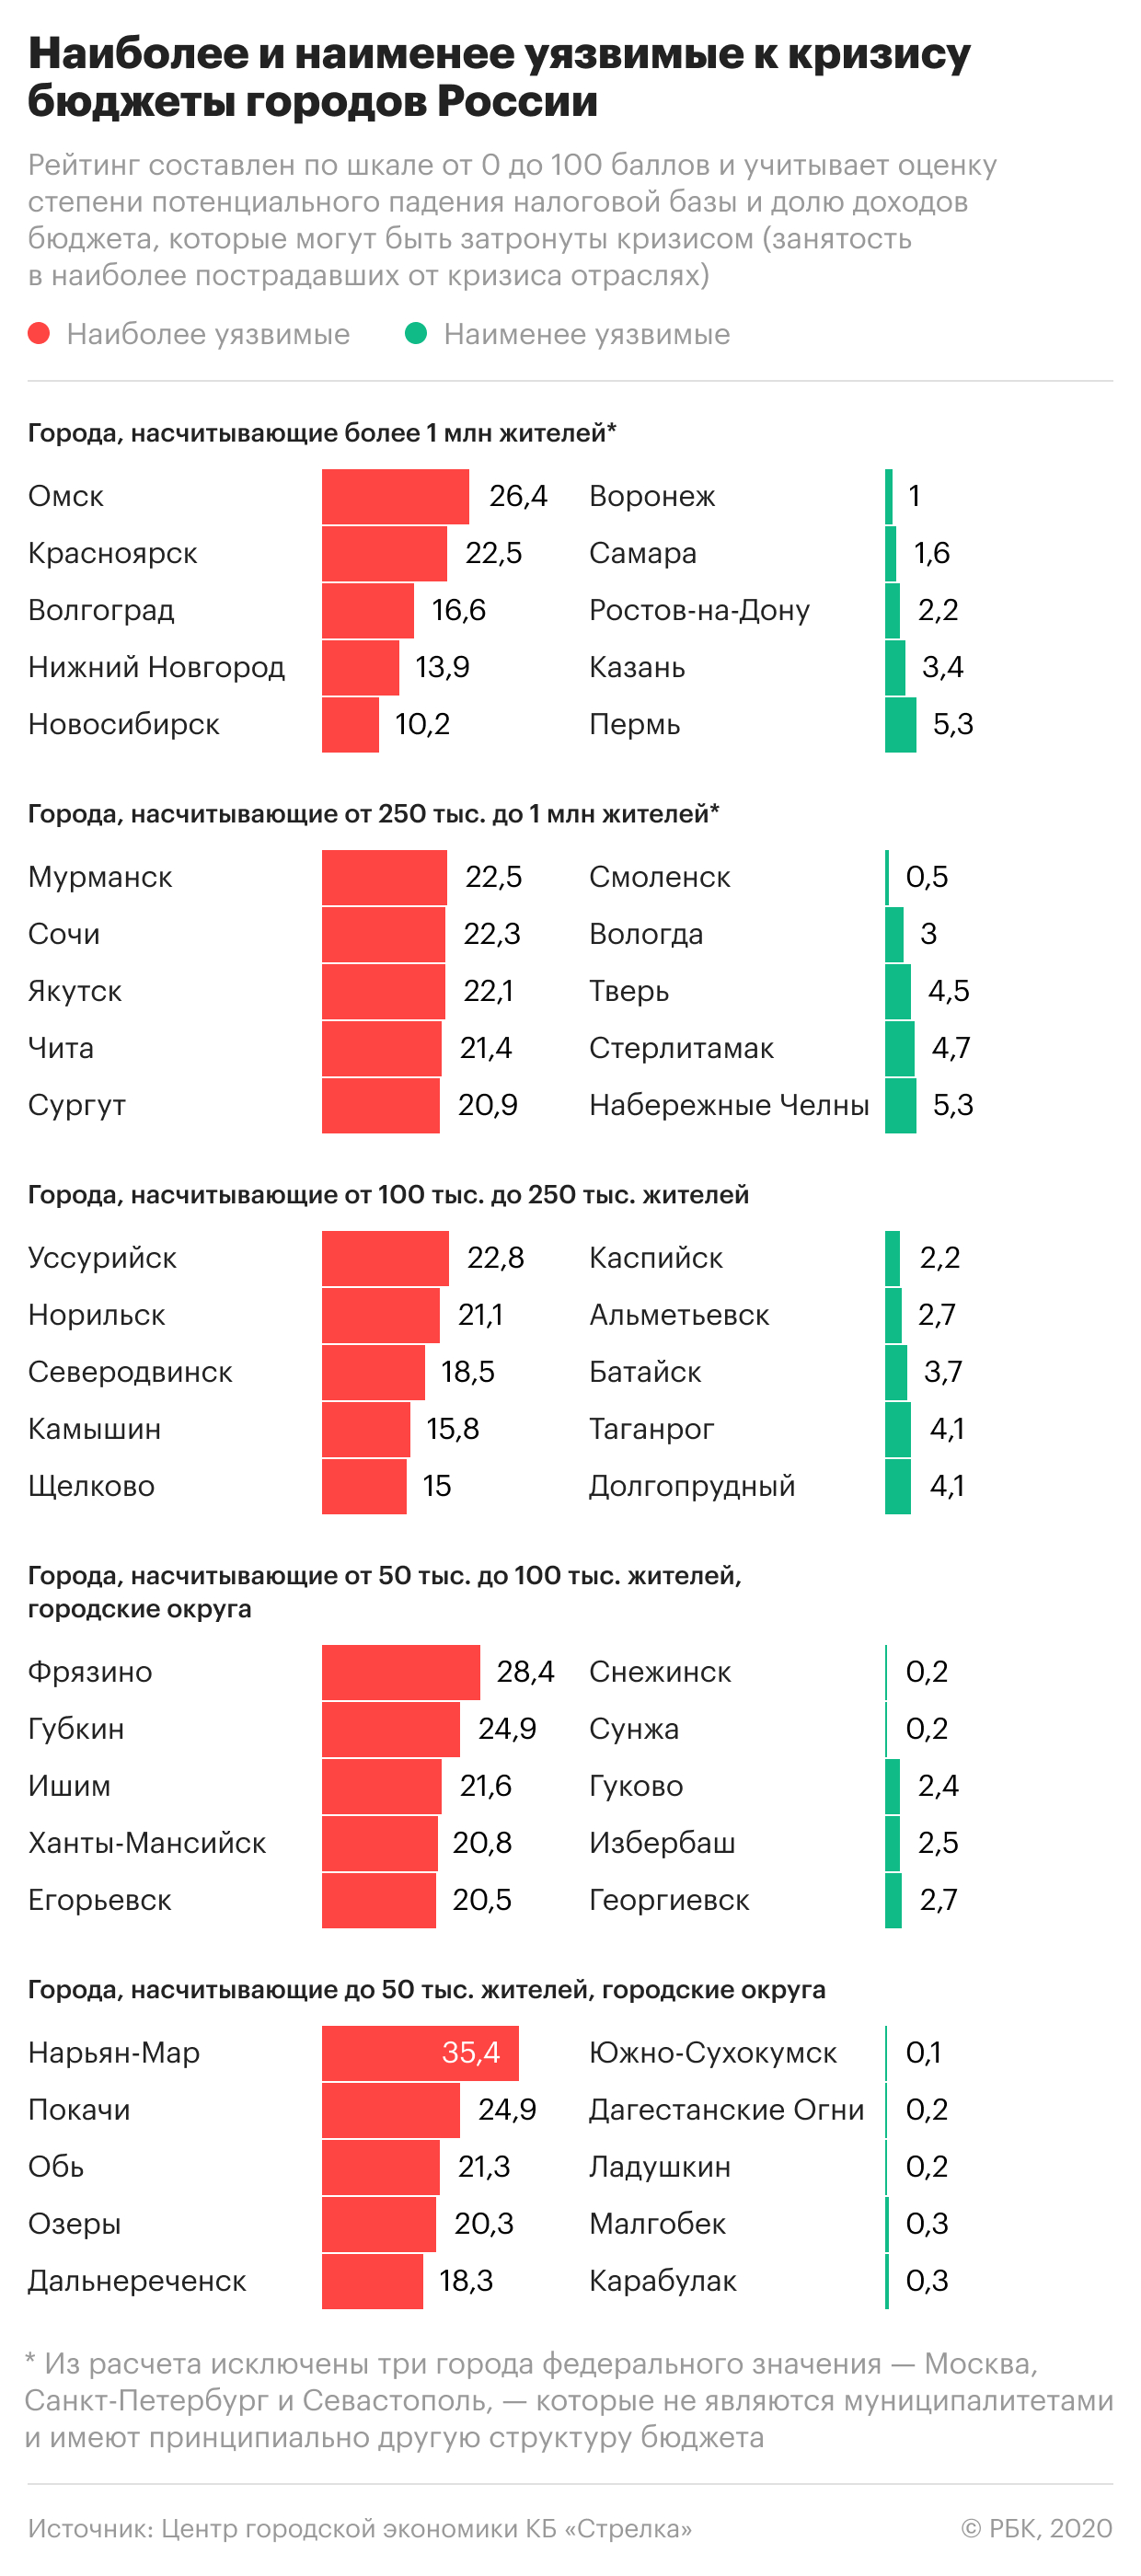 Самые уязвимые к кризису во время эпидемии города России. Инфографика